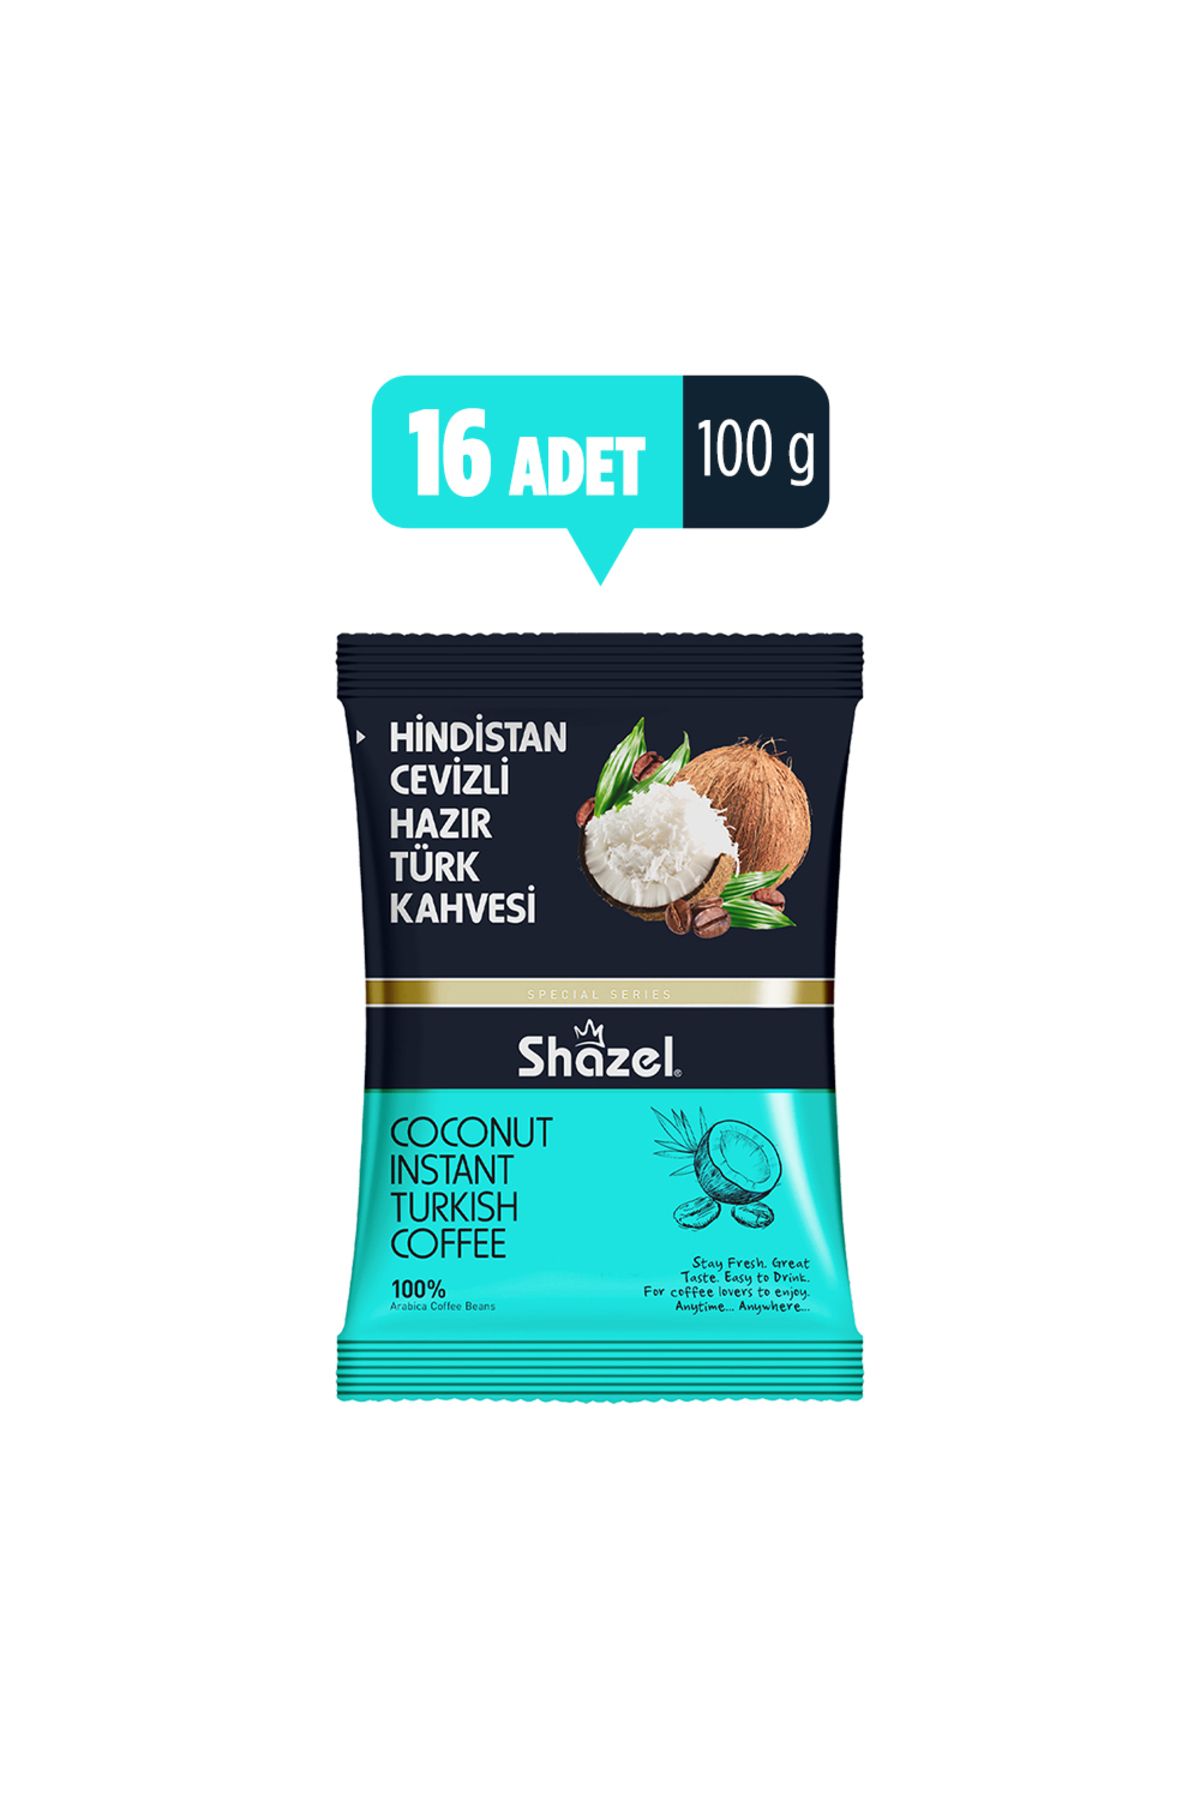 Shazel Hindistan Cevizli Hazır Türk Kahvesi 100g X 16 Adet (AROMALI)